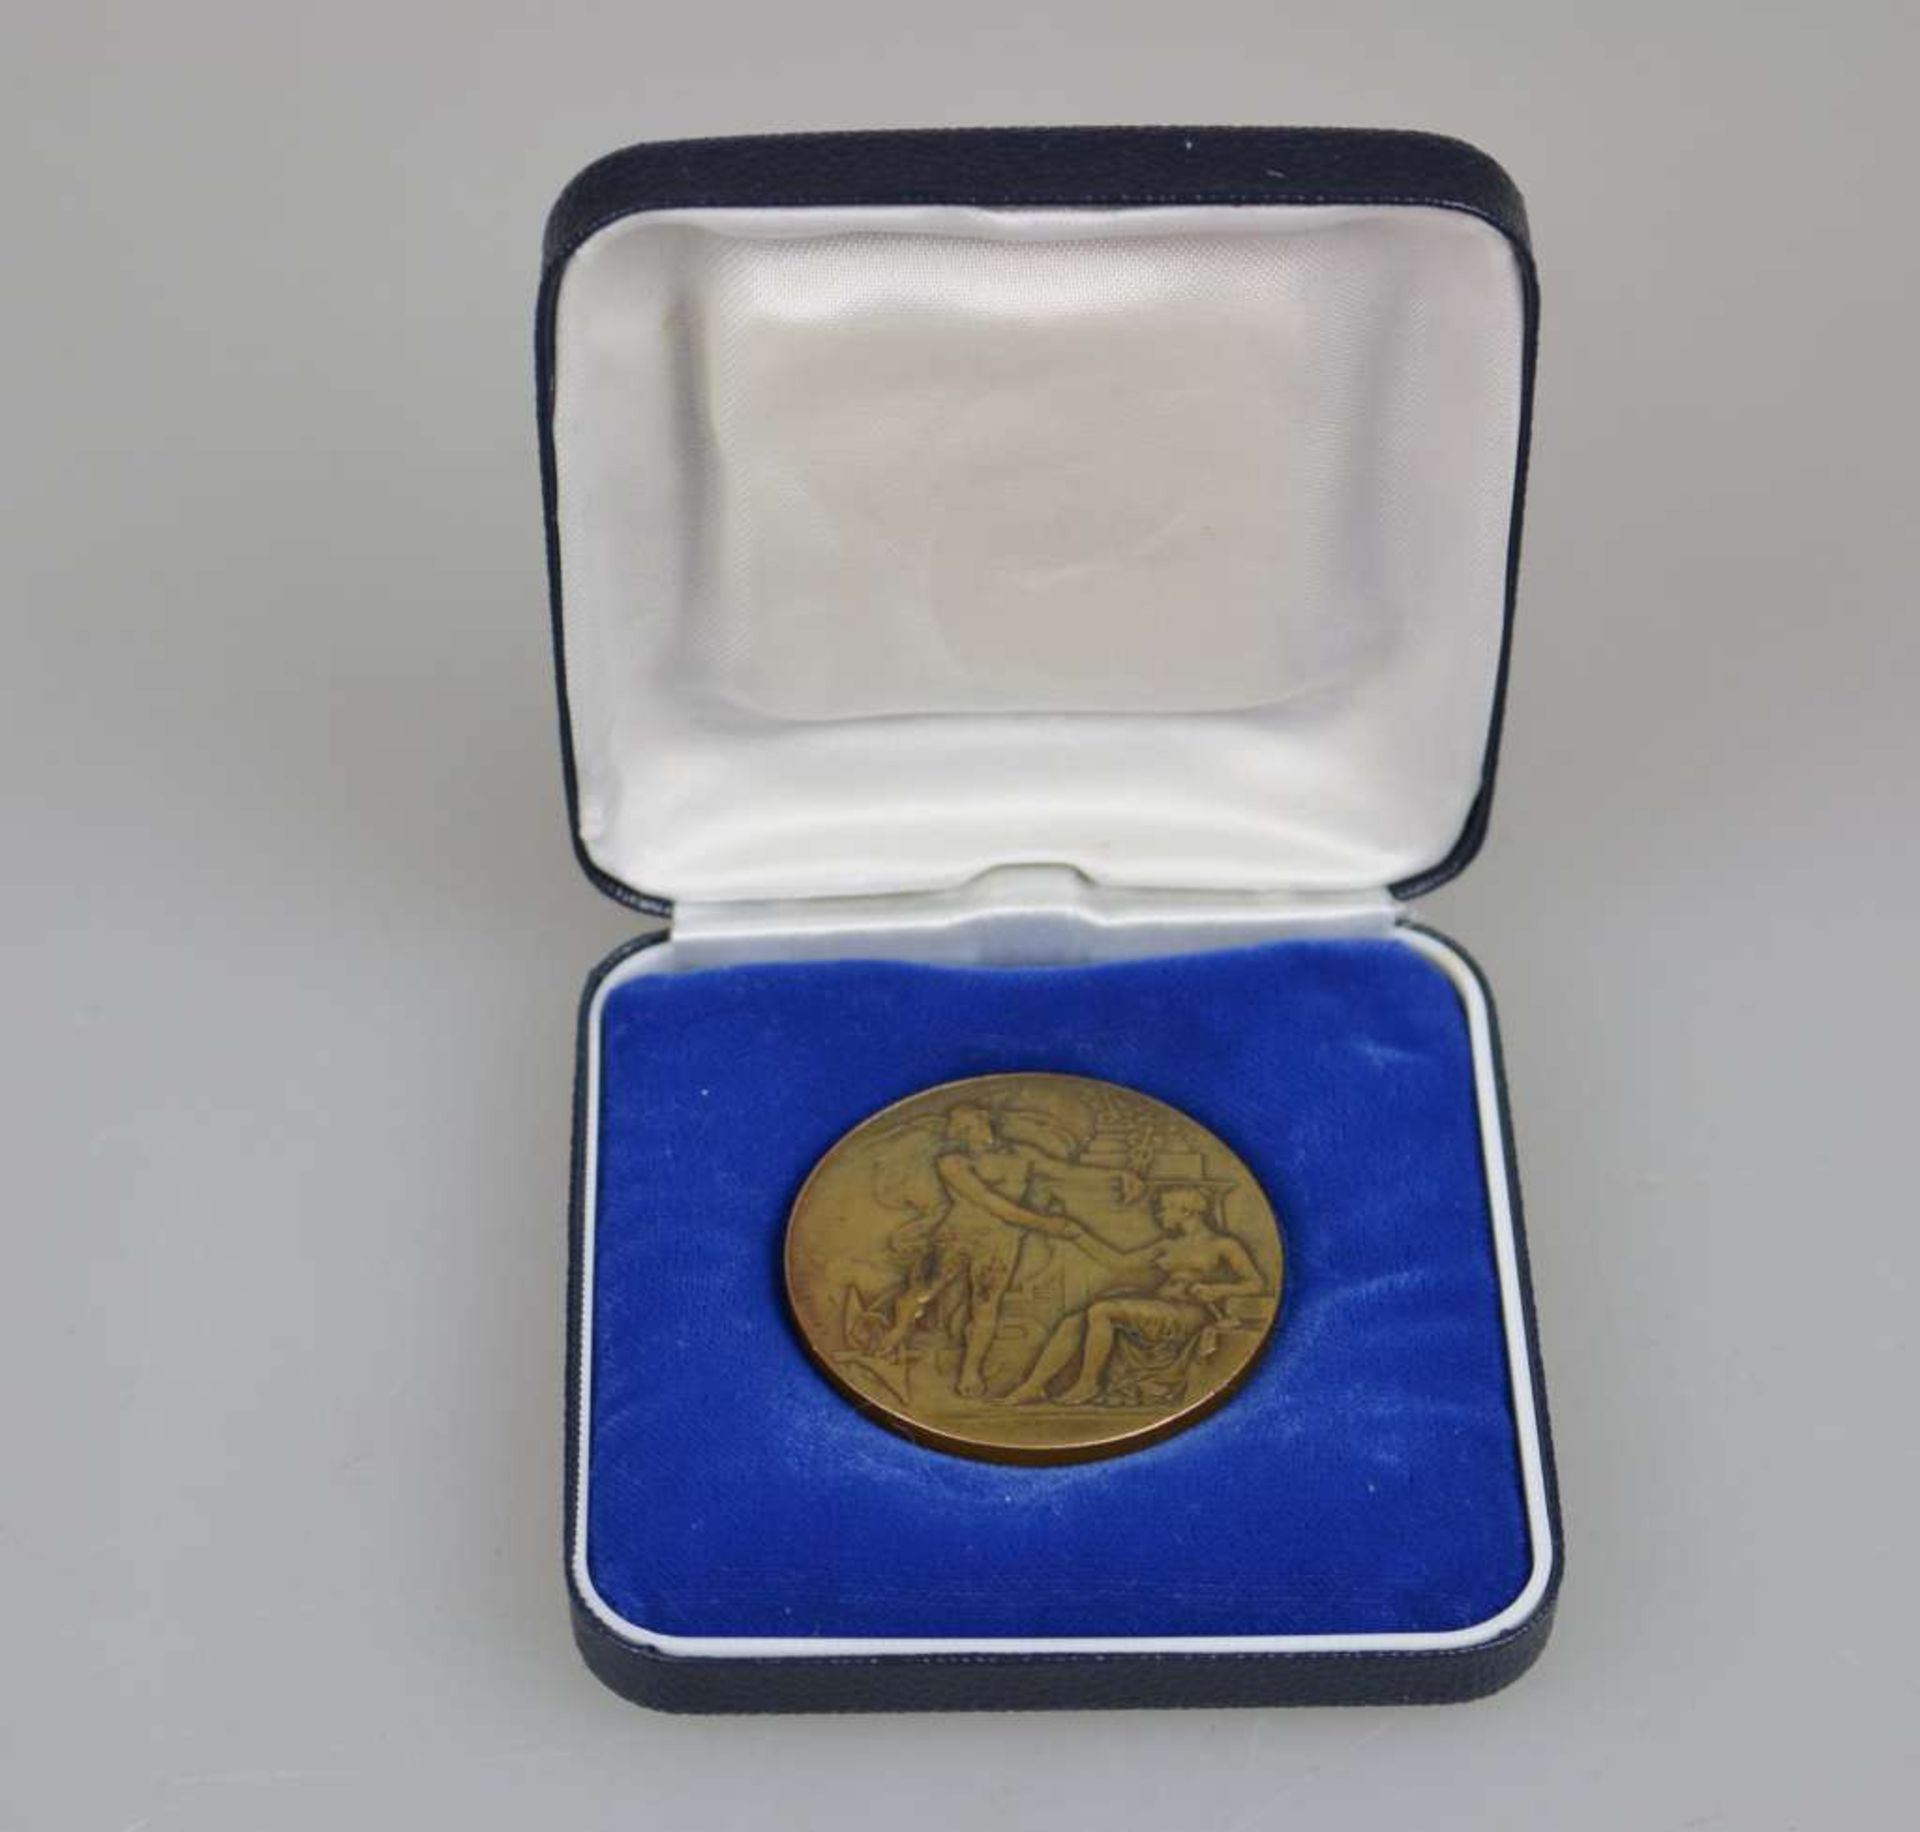 Charles Gustave de Marey (1878-1967) Frankreich, Medaille Handel und Industrie, verliehen an "Landry